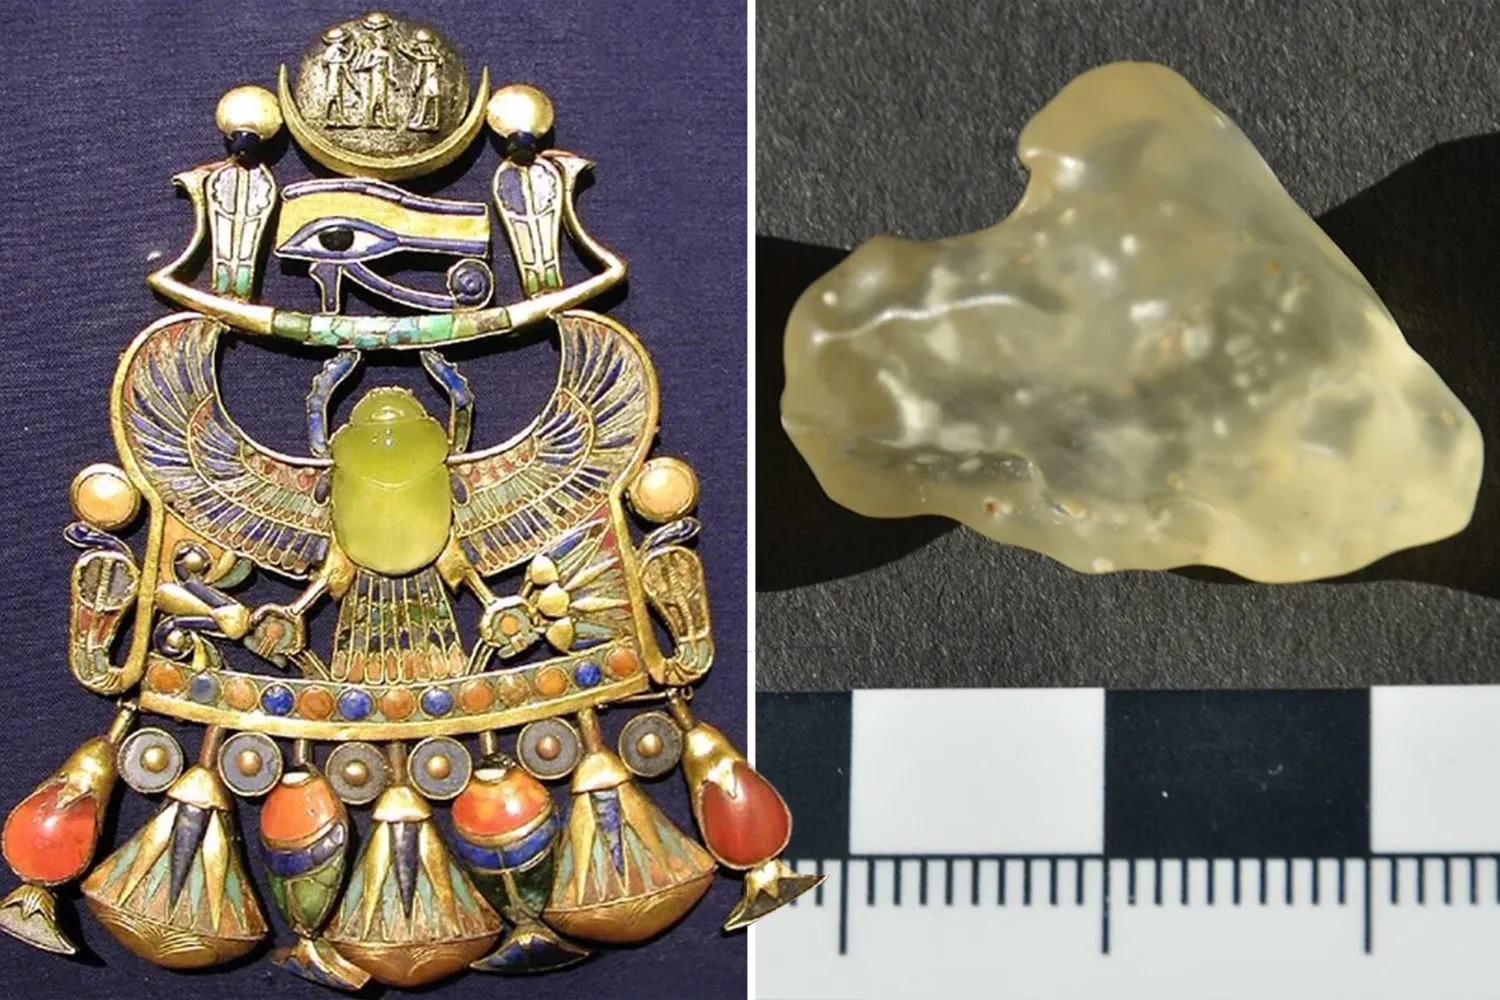 Το μυστηριώδες κίτρινο γυαλί που ανακαλύφθηκε στην Σαχάρα έχει «εξωγήινη προέλευση» και συνδέεται με τον Τουταγχαμών